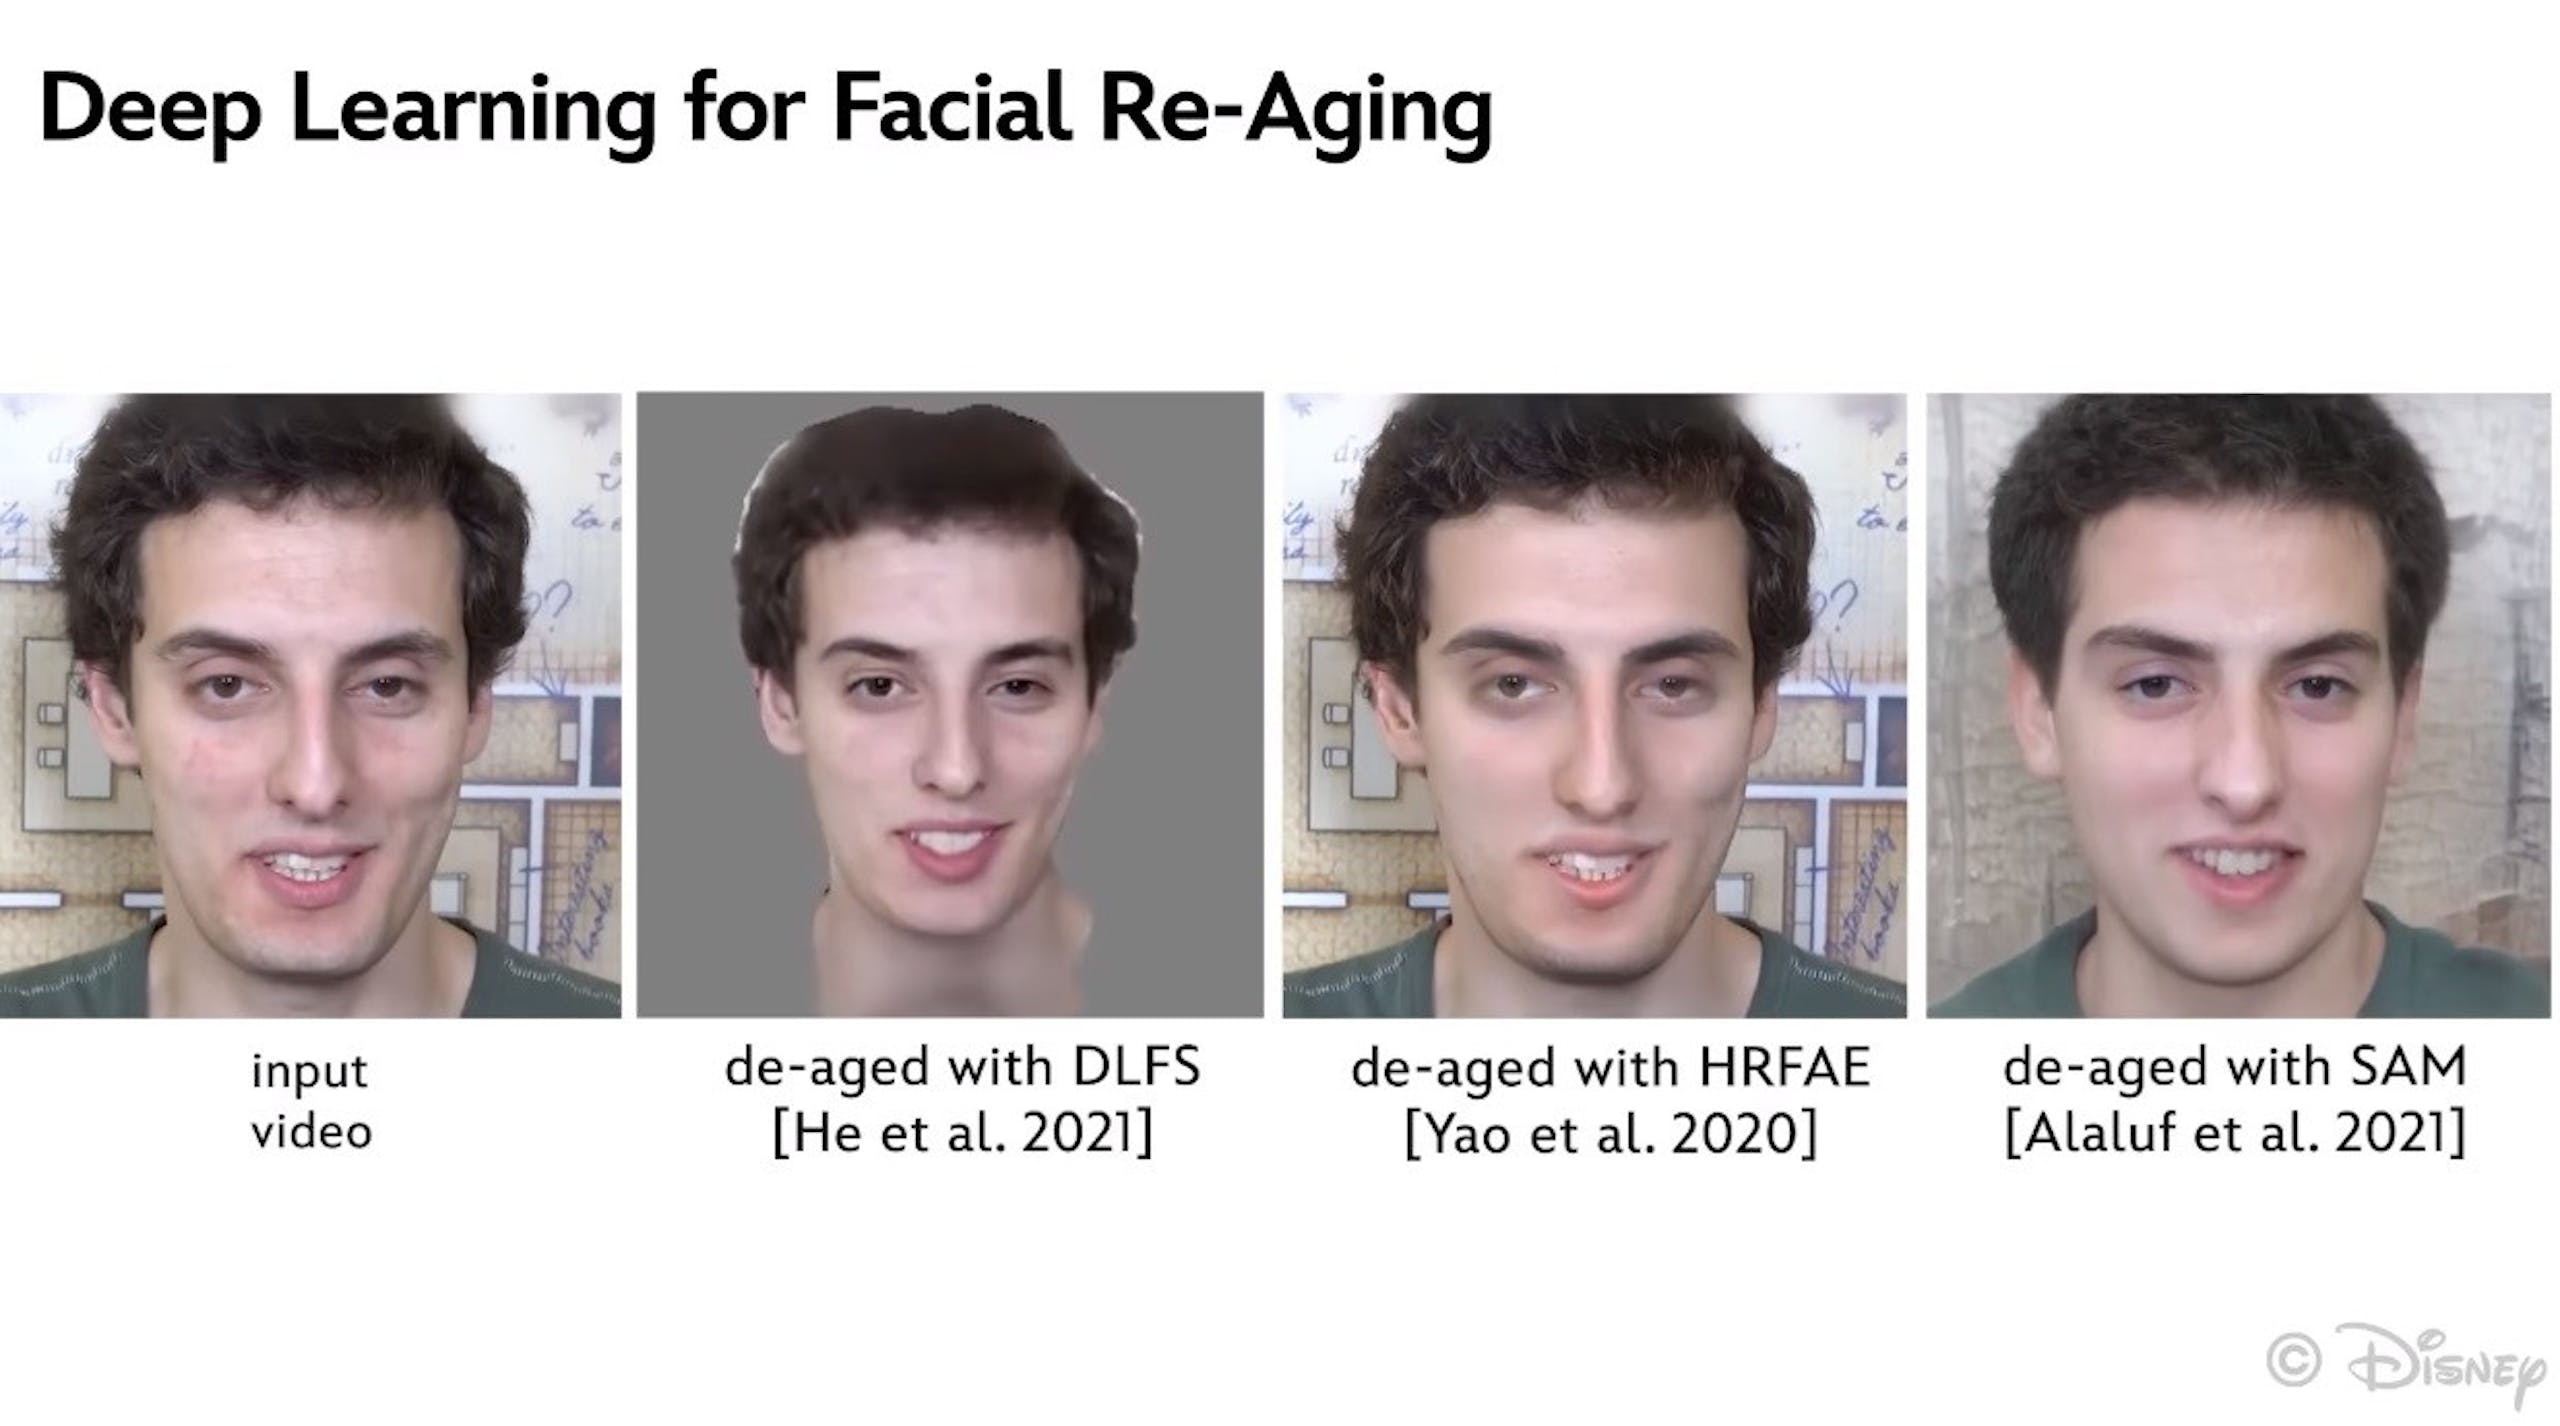 照片中提到了Deep Learning for Facial Re-Aging、input、video，跟華特迪士尼世界有關，包含了頭、面對、頭、前額、嘴唇